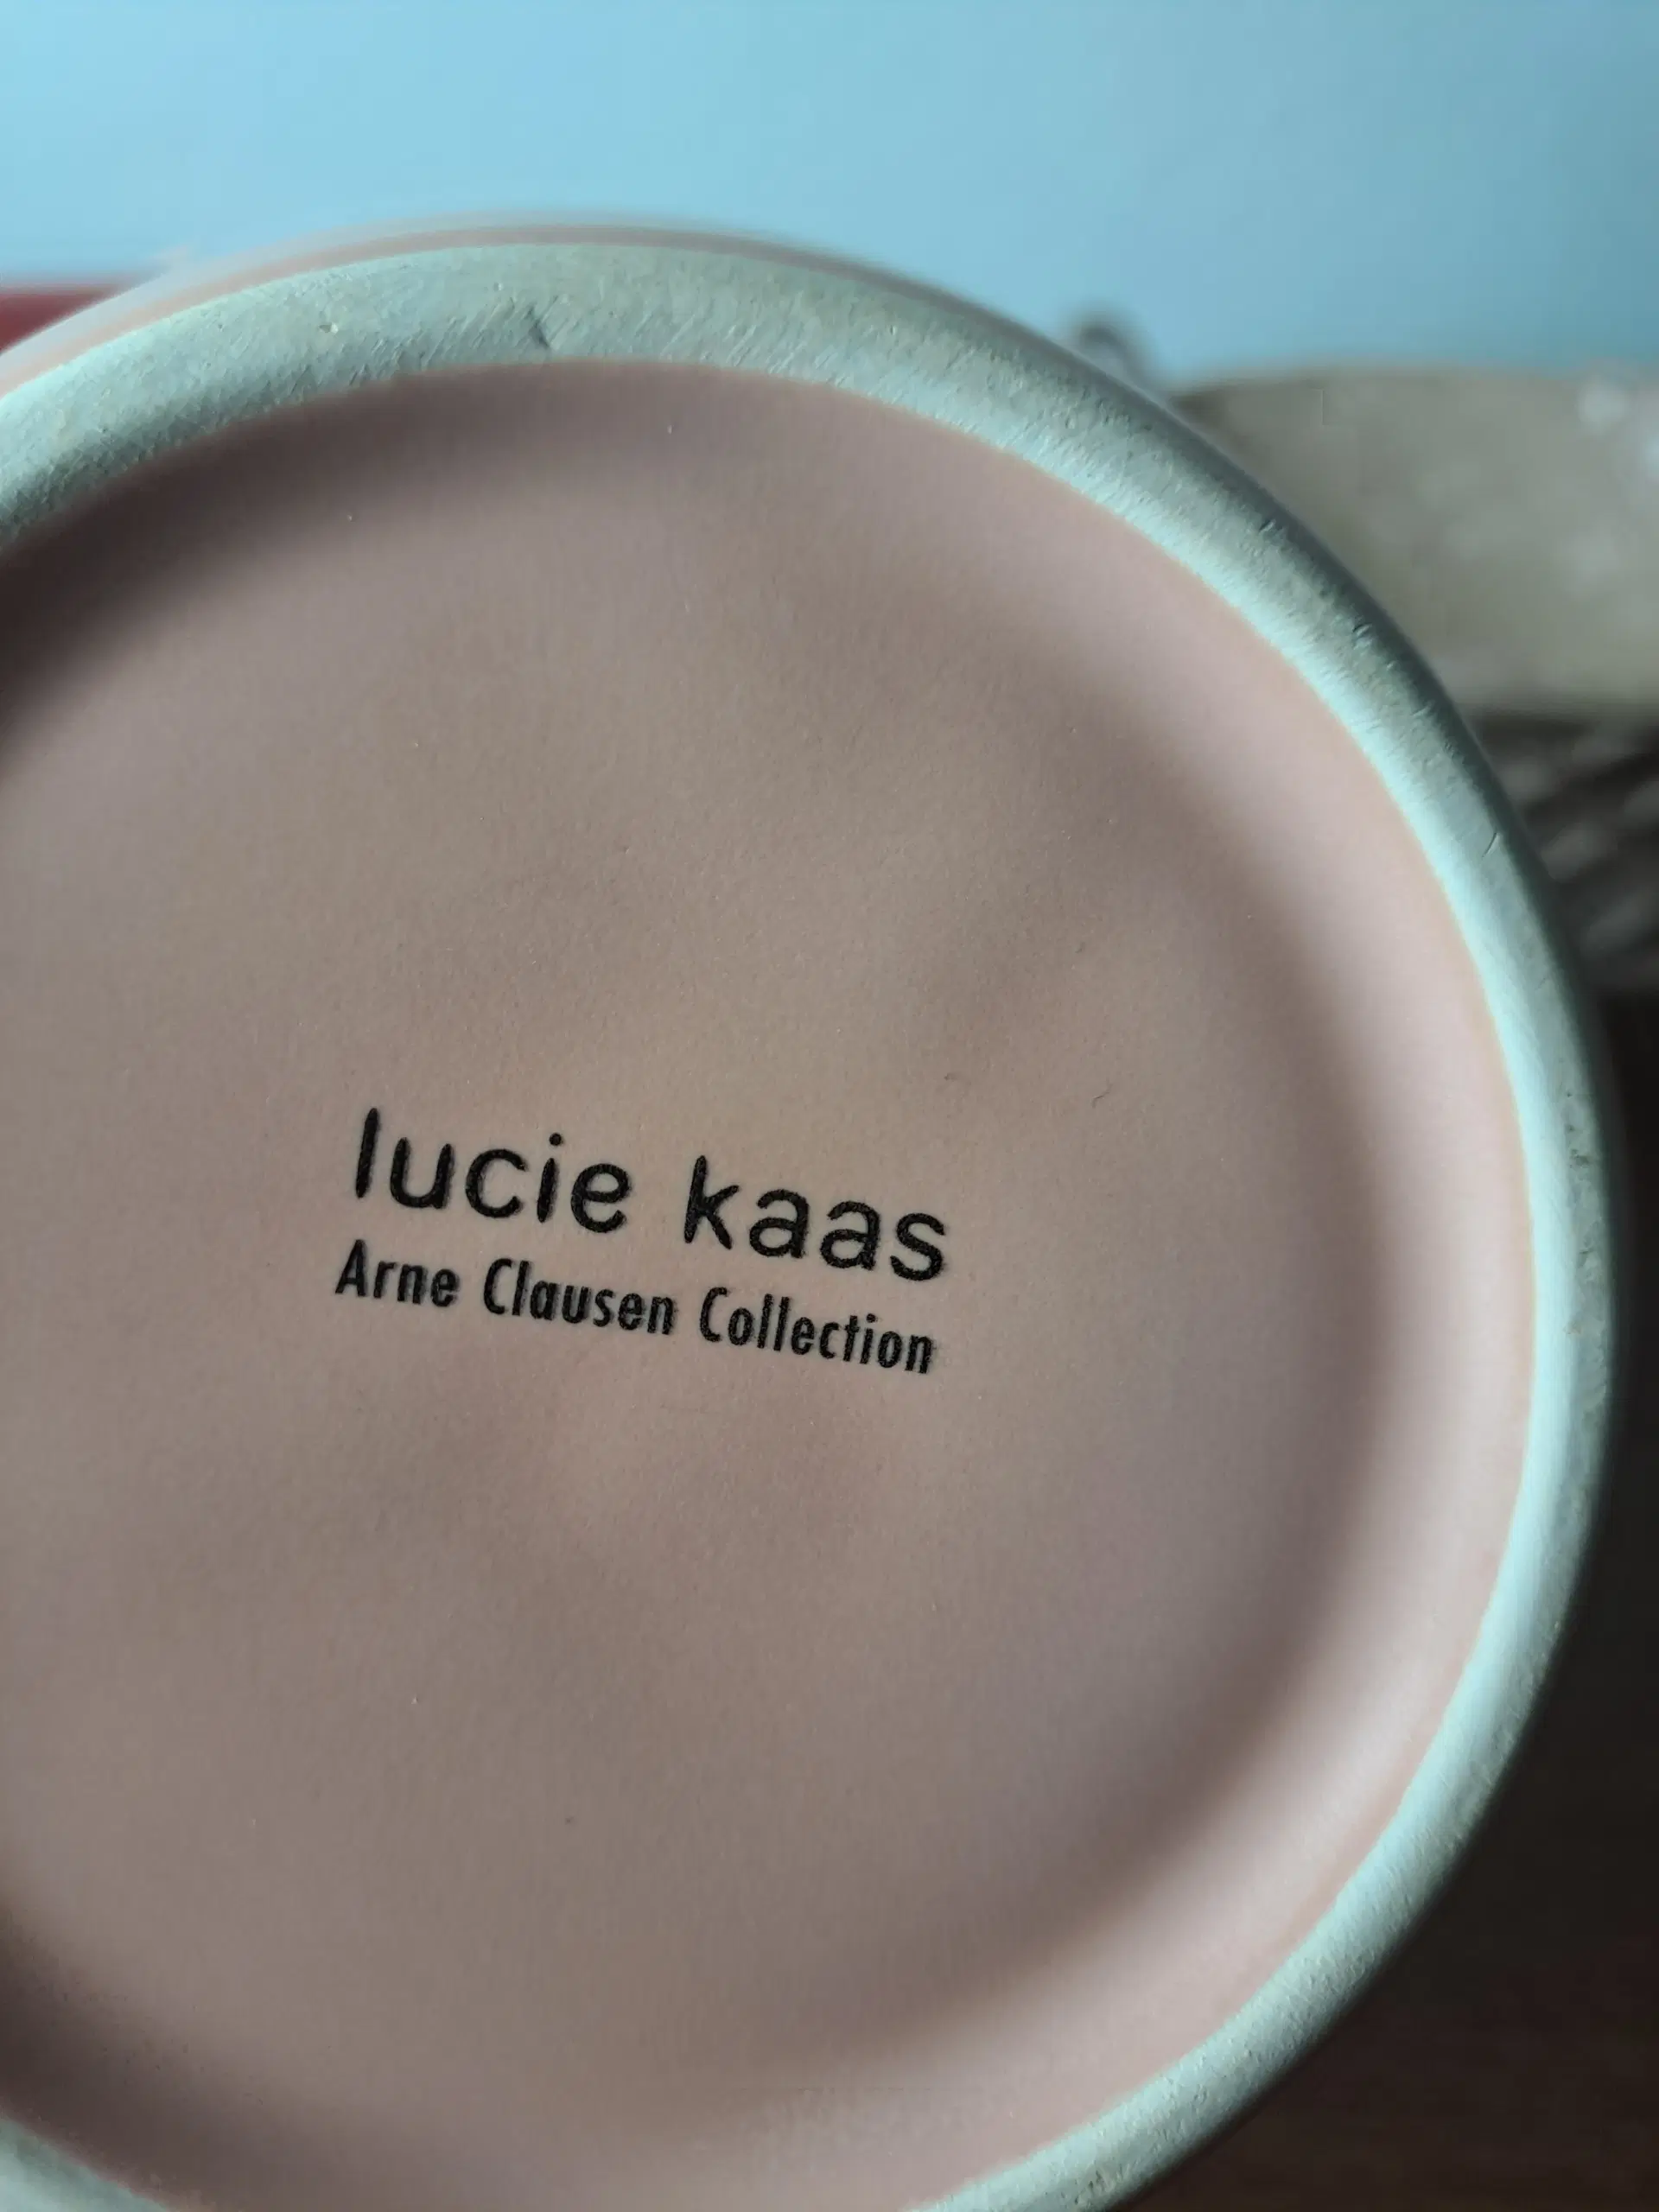 Arne Clausen Lucie Kaas (Lotus vase)